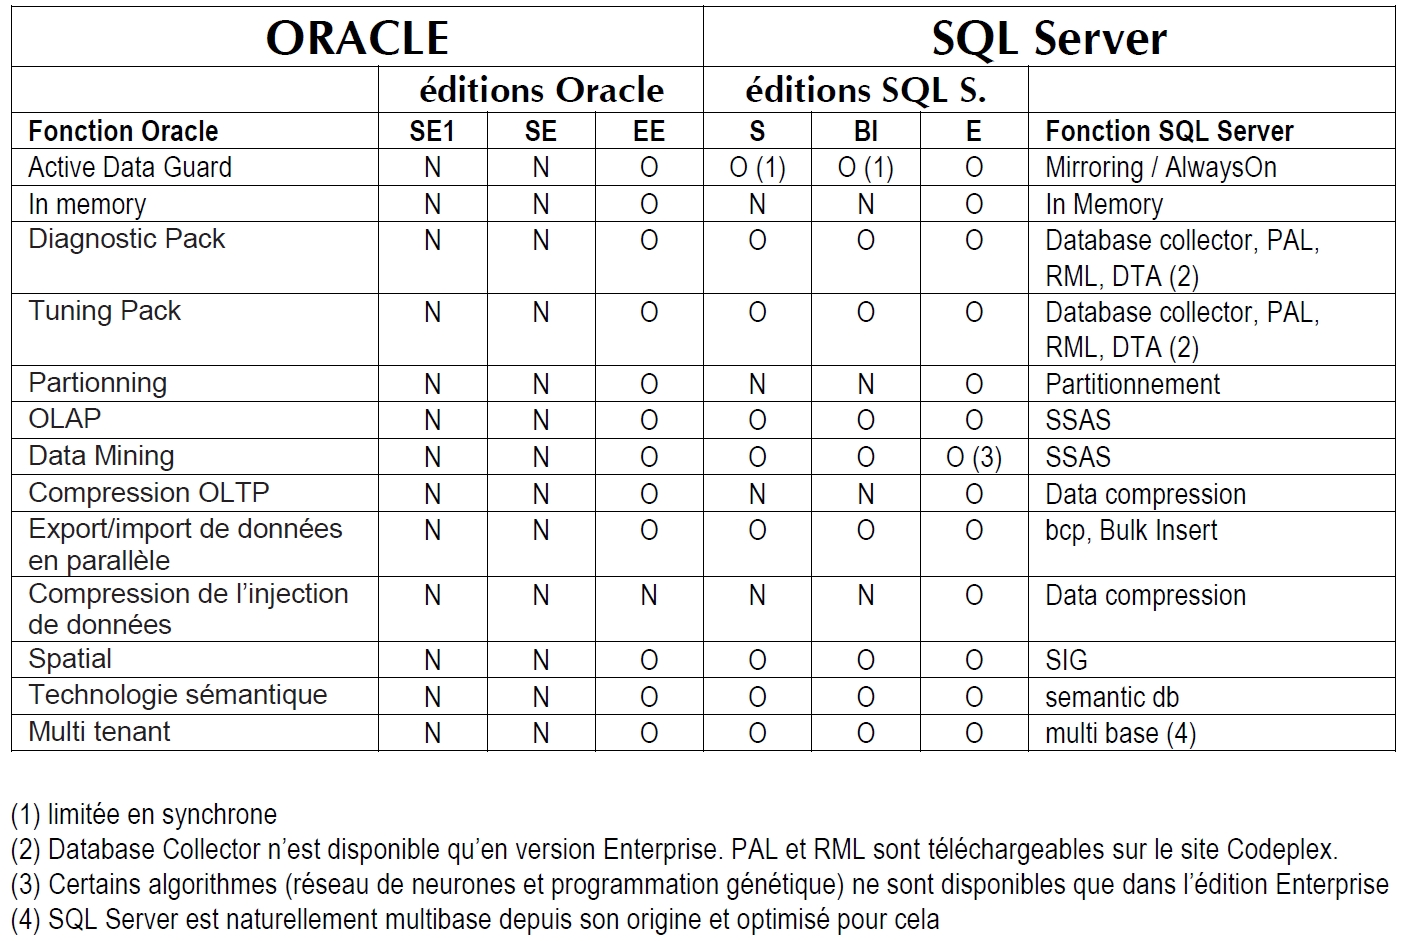 Comparaison des fonctionnalités Oracle (payantes) et SQL Server (gratuites)